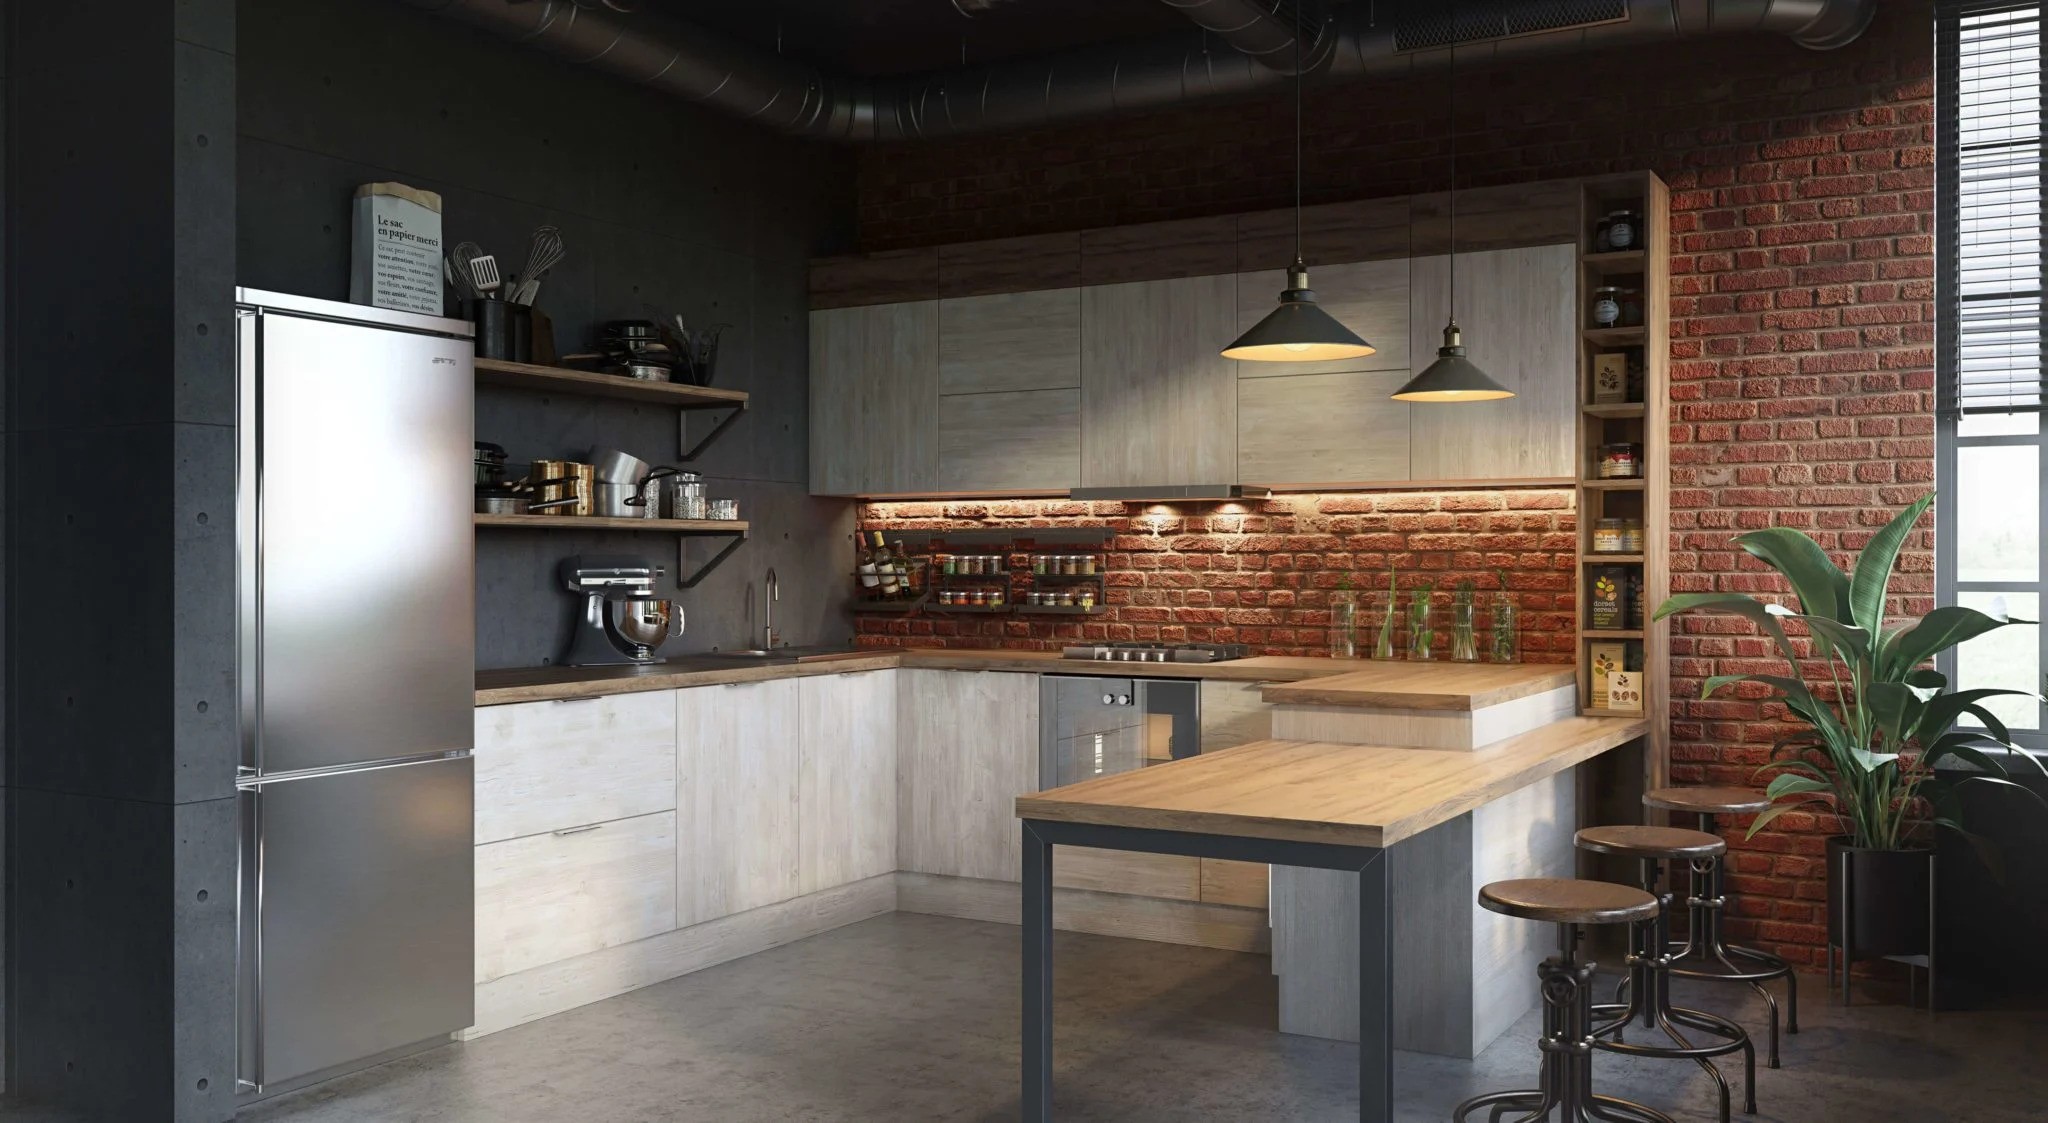 interior lighting renders kitchen